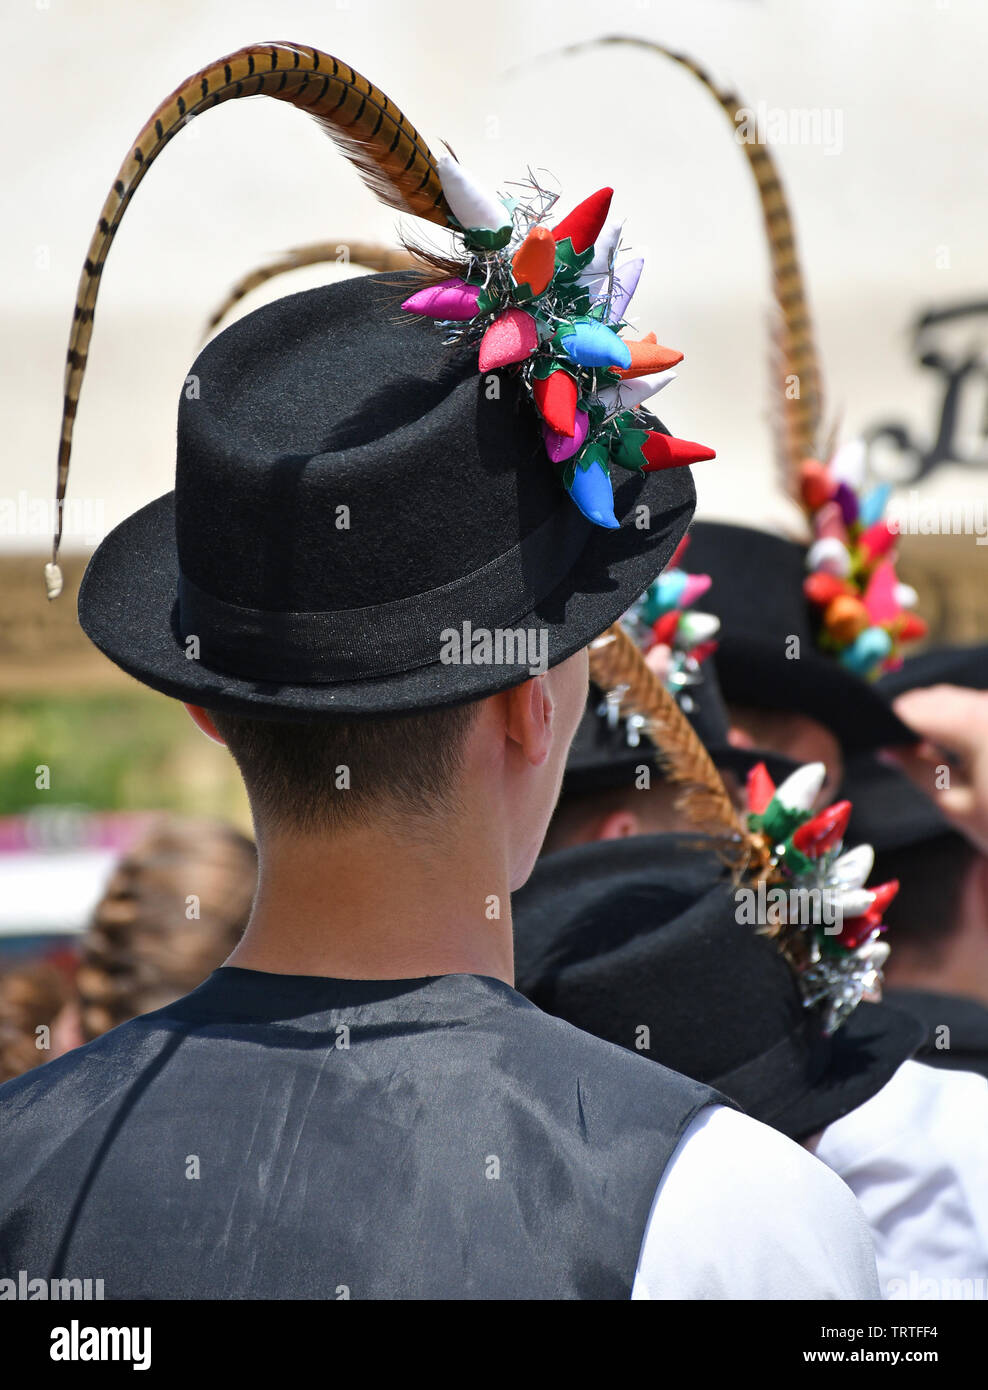 Folk dancer men in strange hat Stock Photo